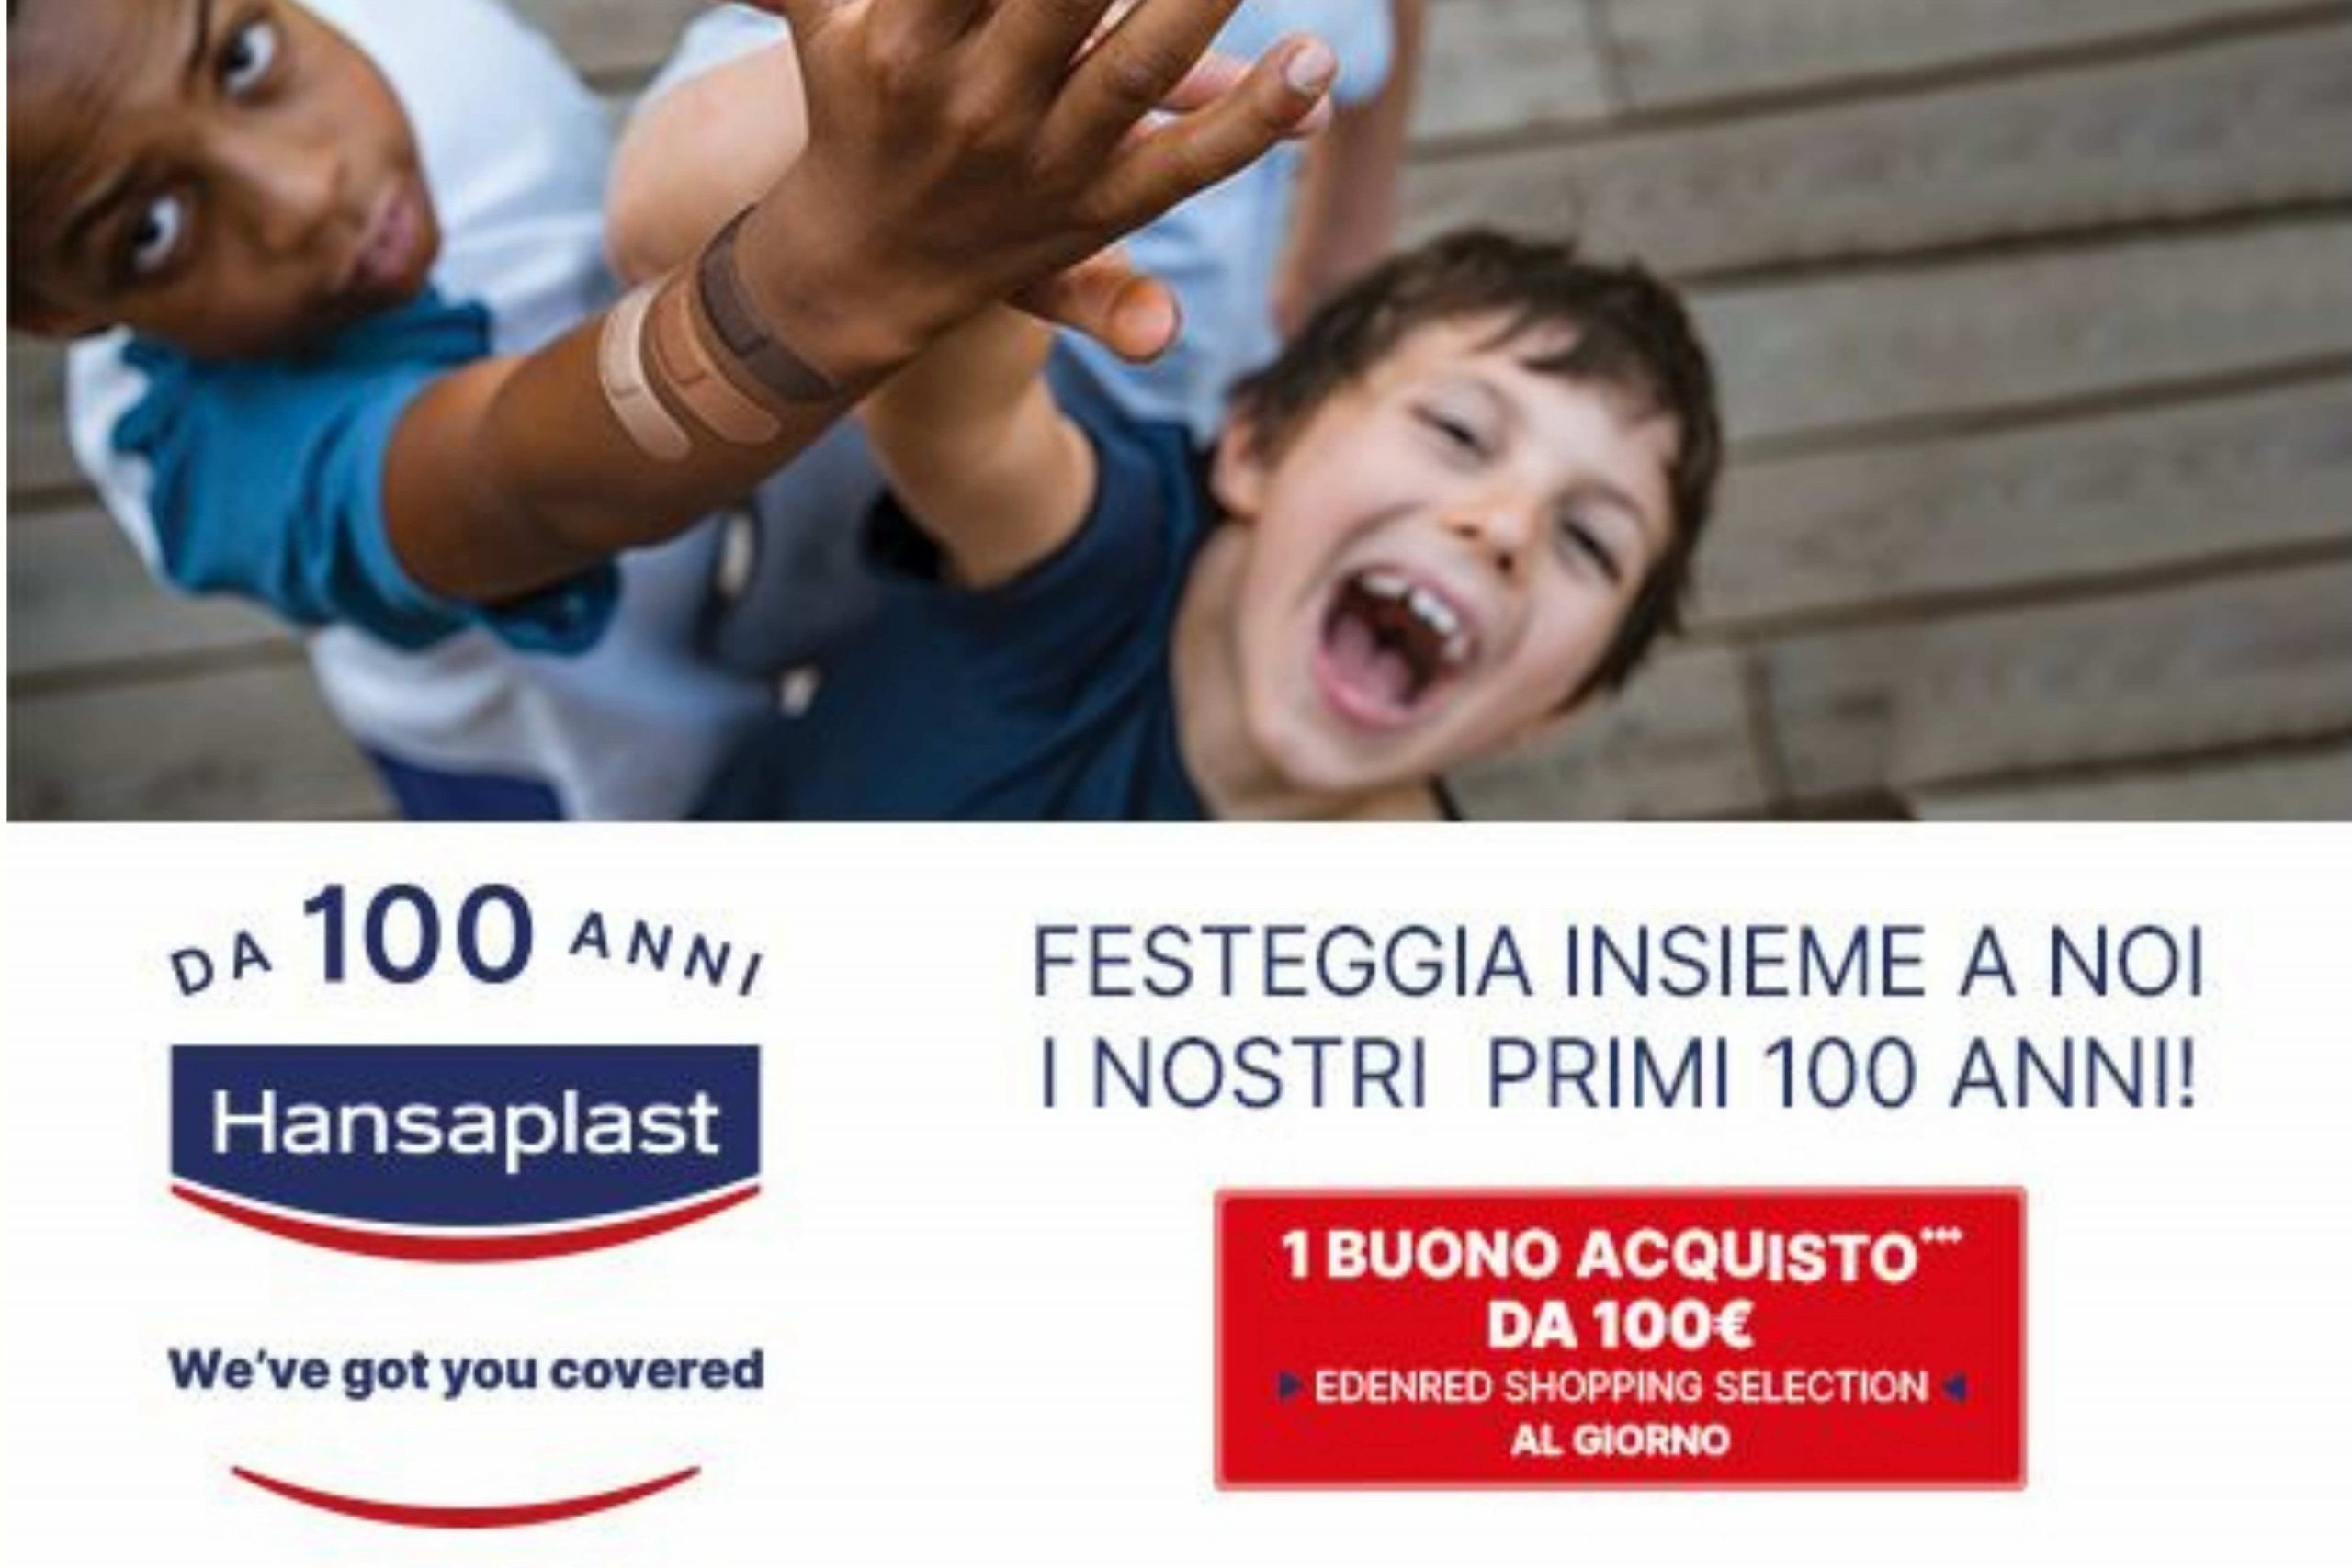 Concorso “100 anni” by Hansaplast : in palio 1 Buono Acquisto Edenred Shopping da 100€